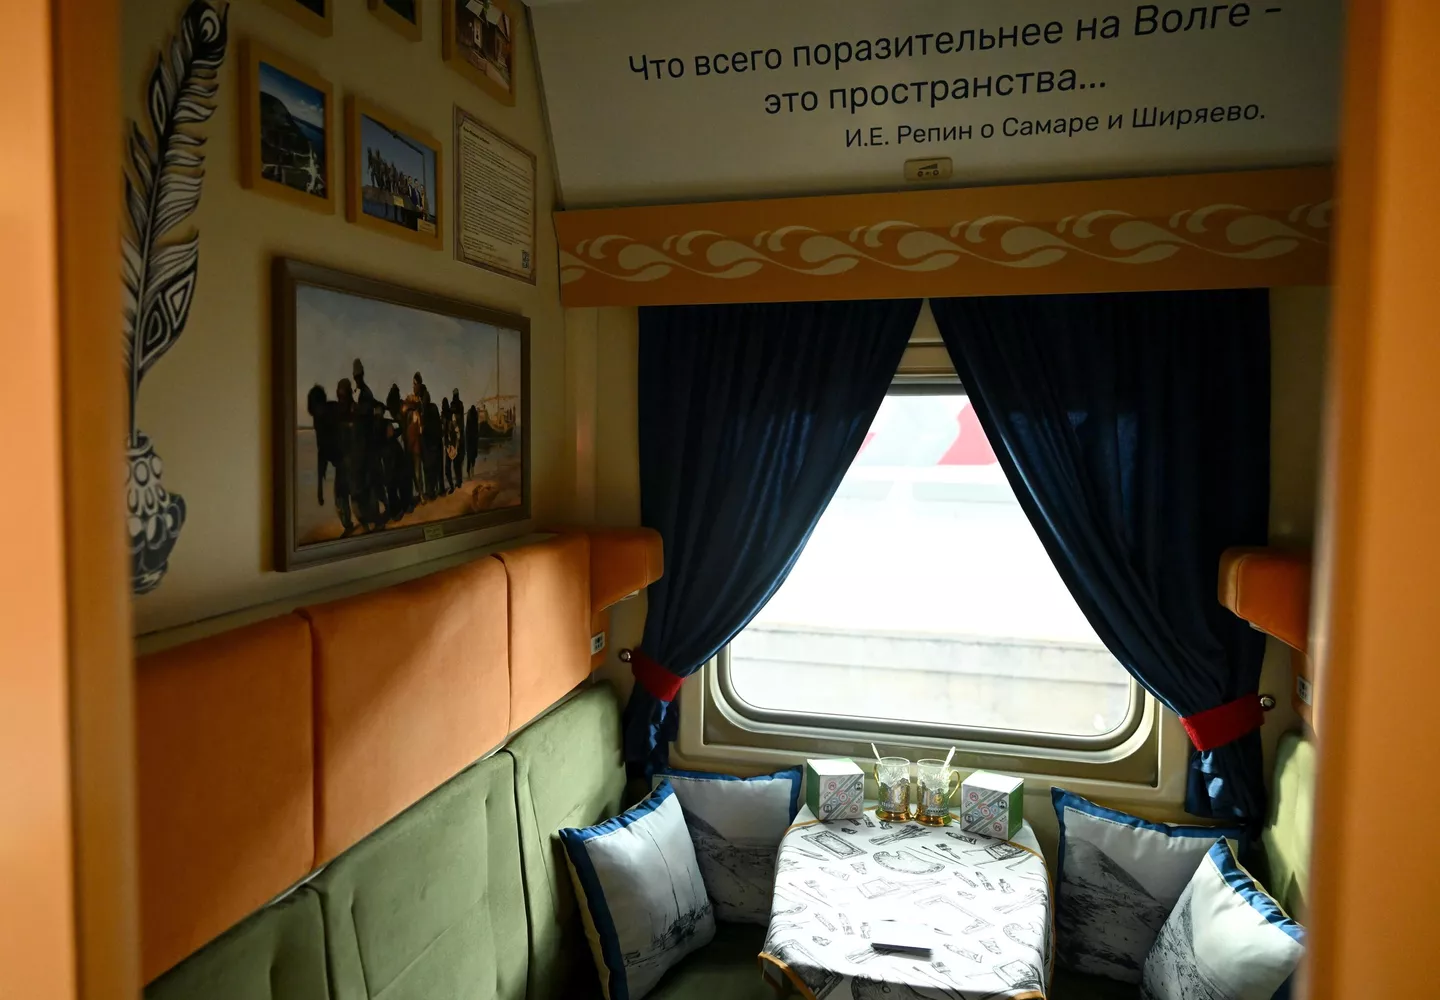 モスクワのクルスキー駅にあるブランド列車9/10号ジグリ（モスクワ～サマラ）の一部であるクルトサマラ観光客車のコンパートメントの内部